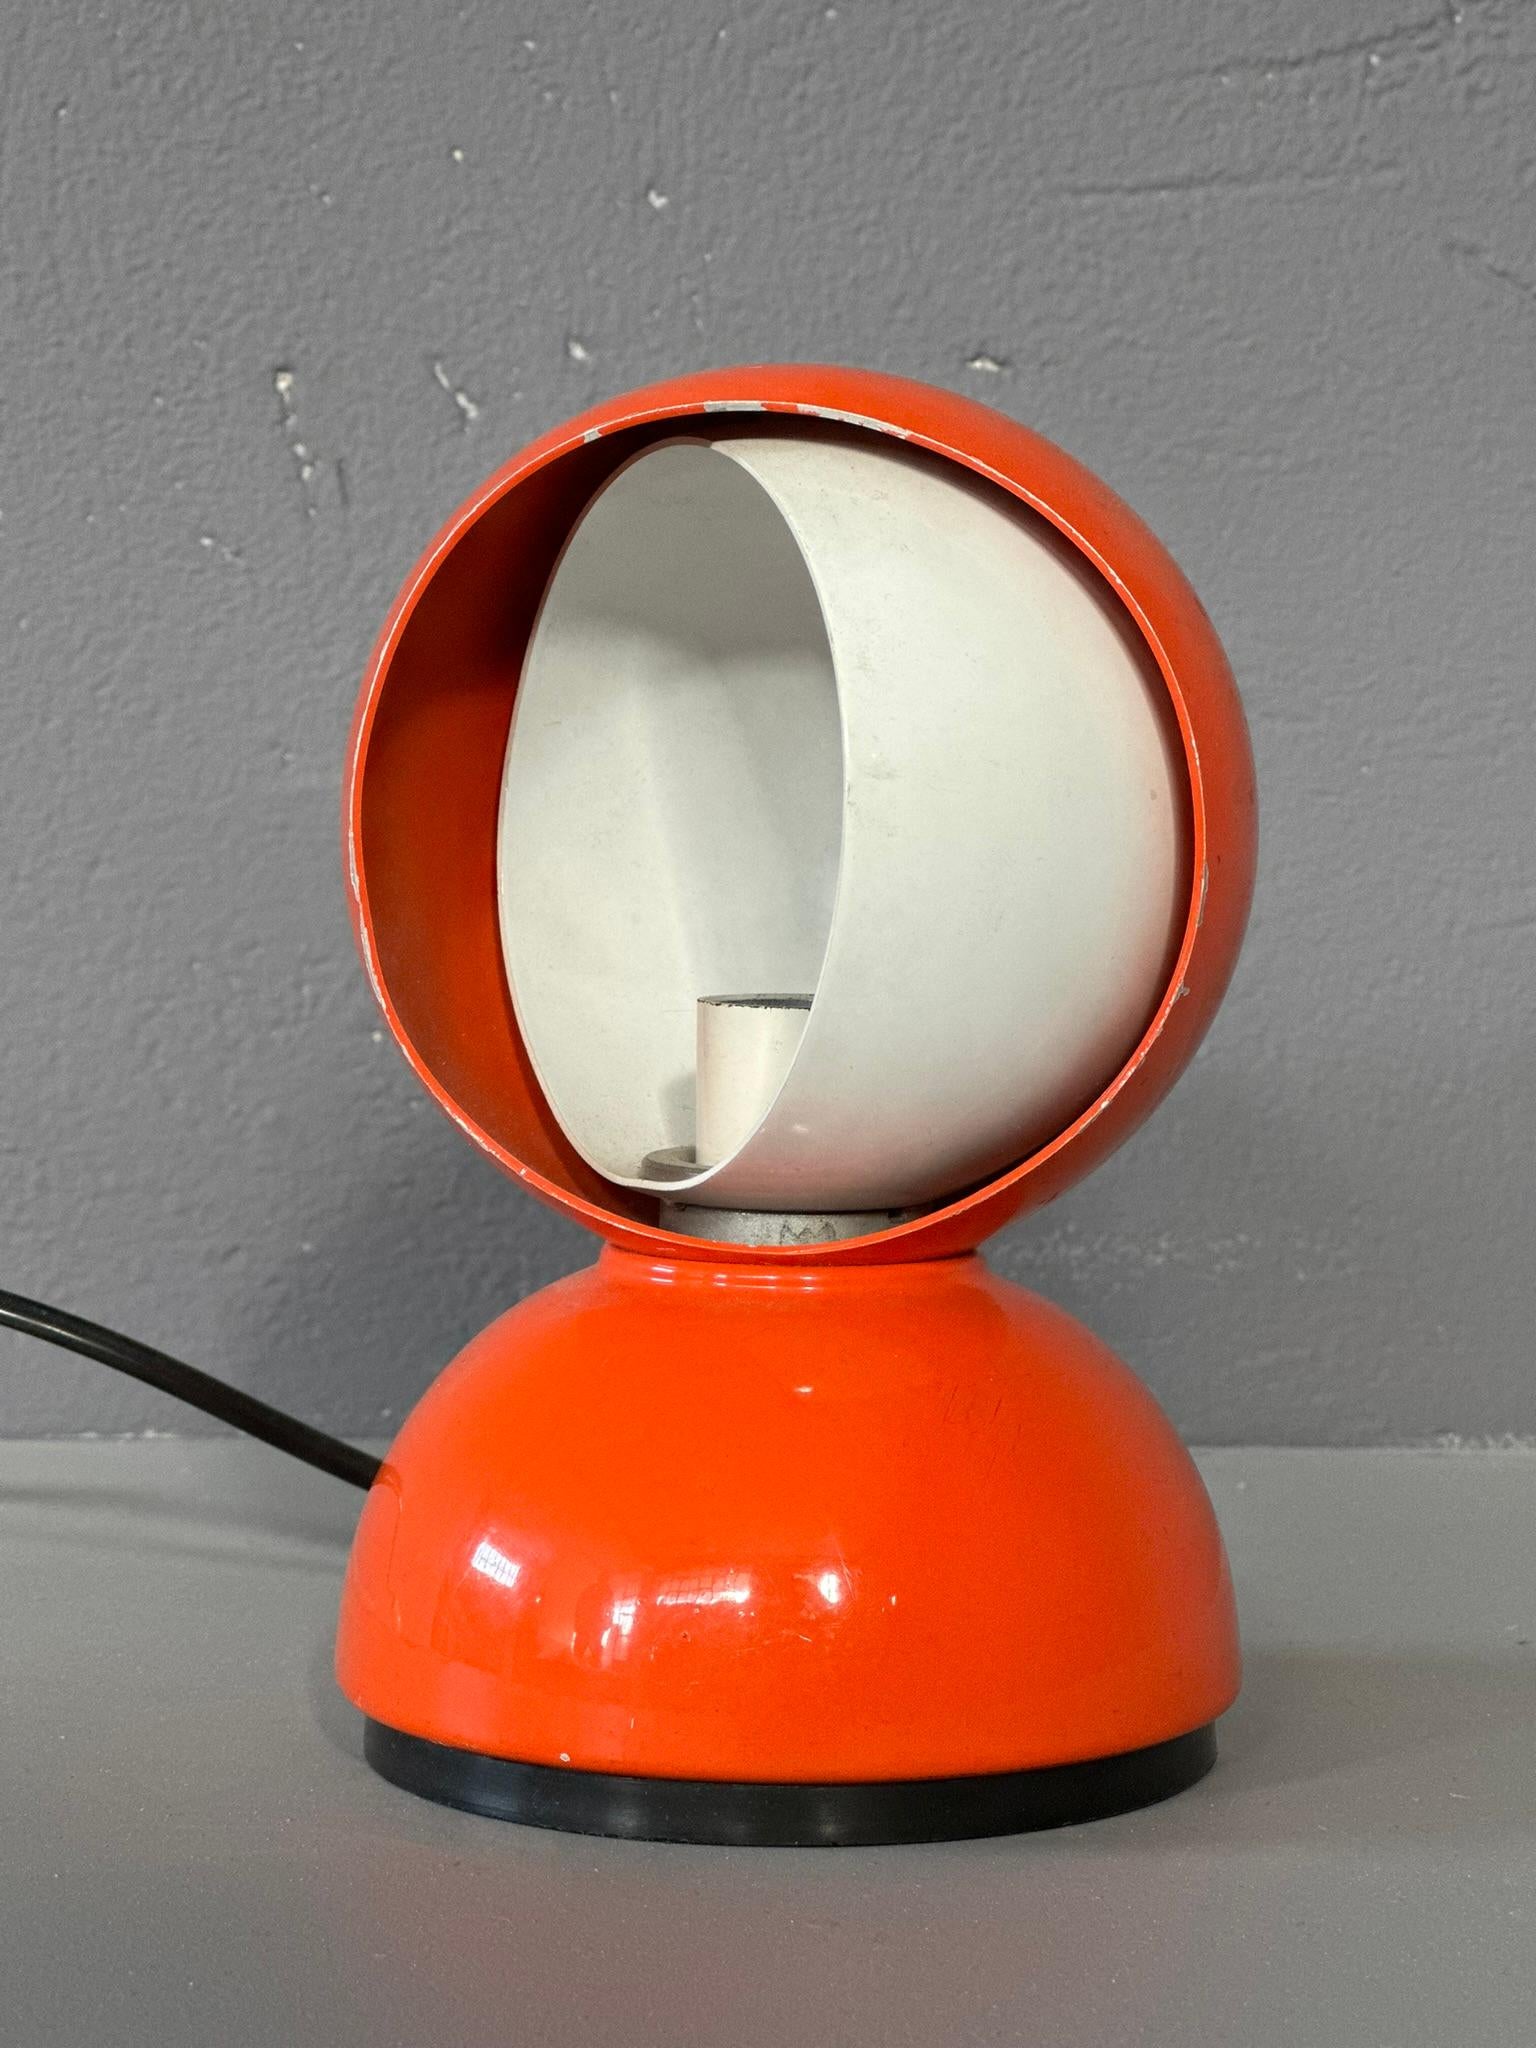 Vico Magistretti - Lampe à poser Eclisse
La lampe de table Eclissi, une icône du design italien conçue par Vico Magistretti pour Artemide.
Il s'agit de la première édition, en couleur orange.
La lampe fonctionne